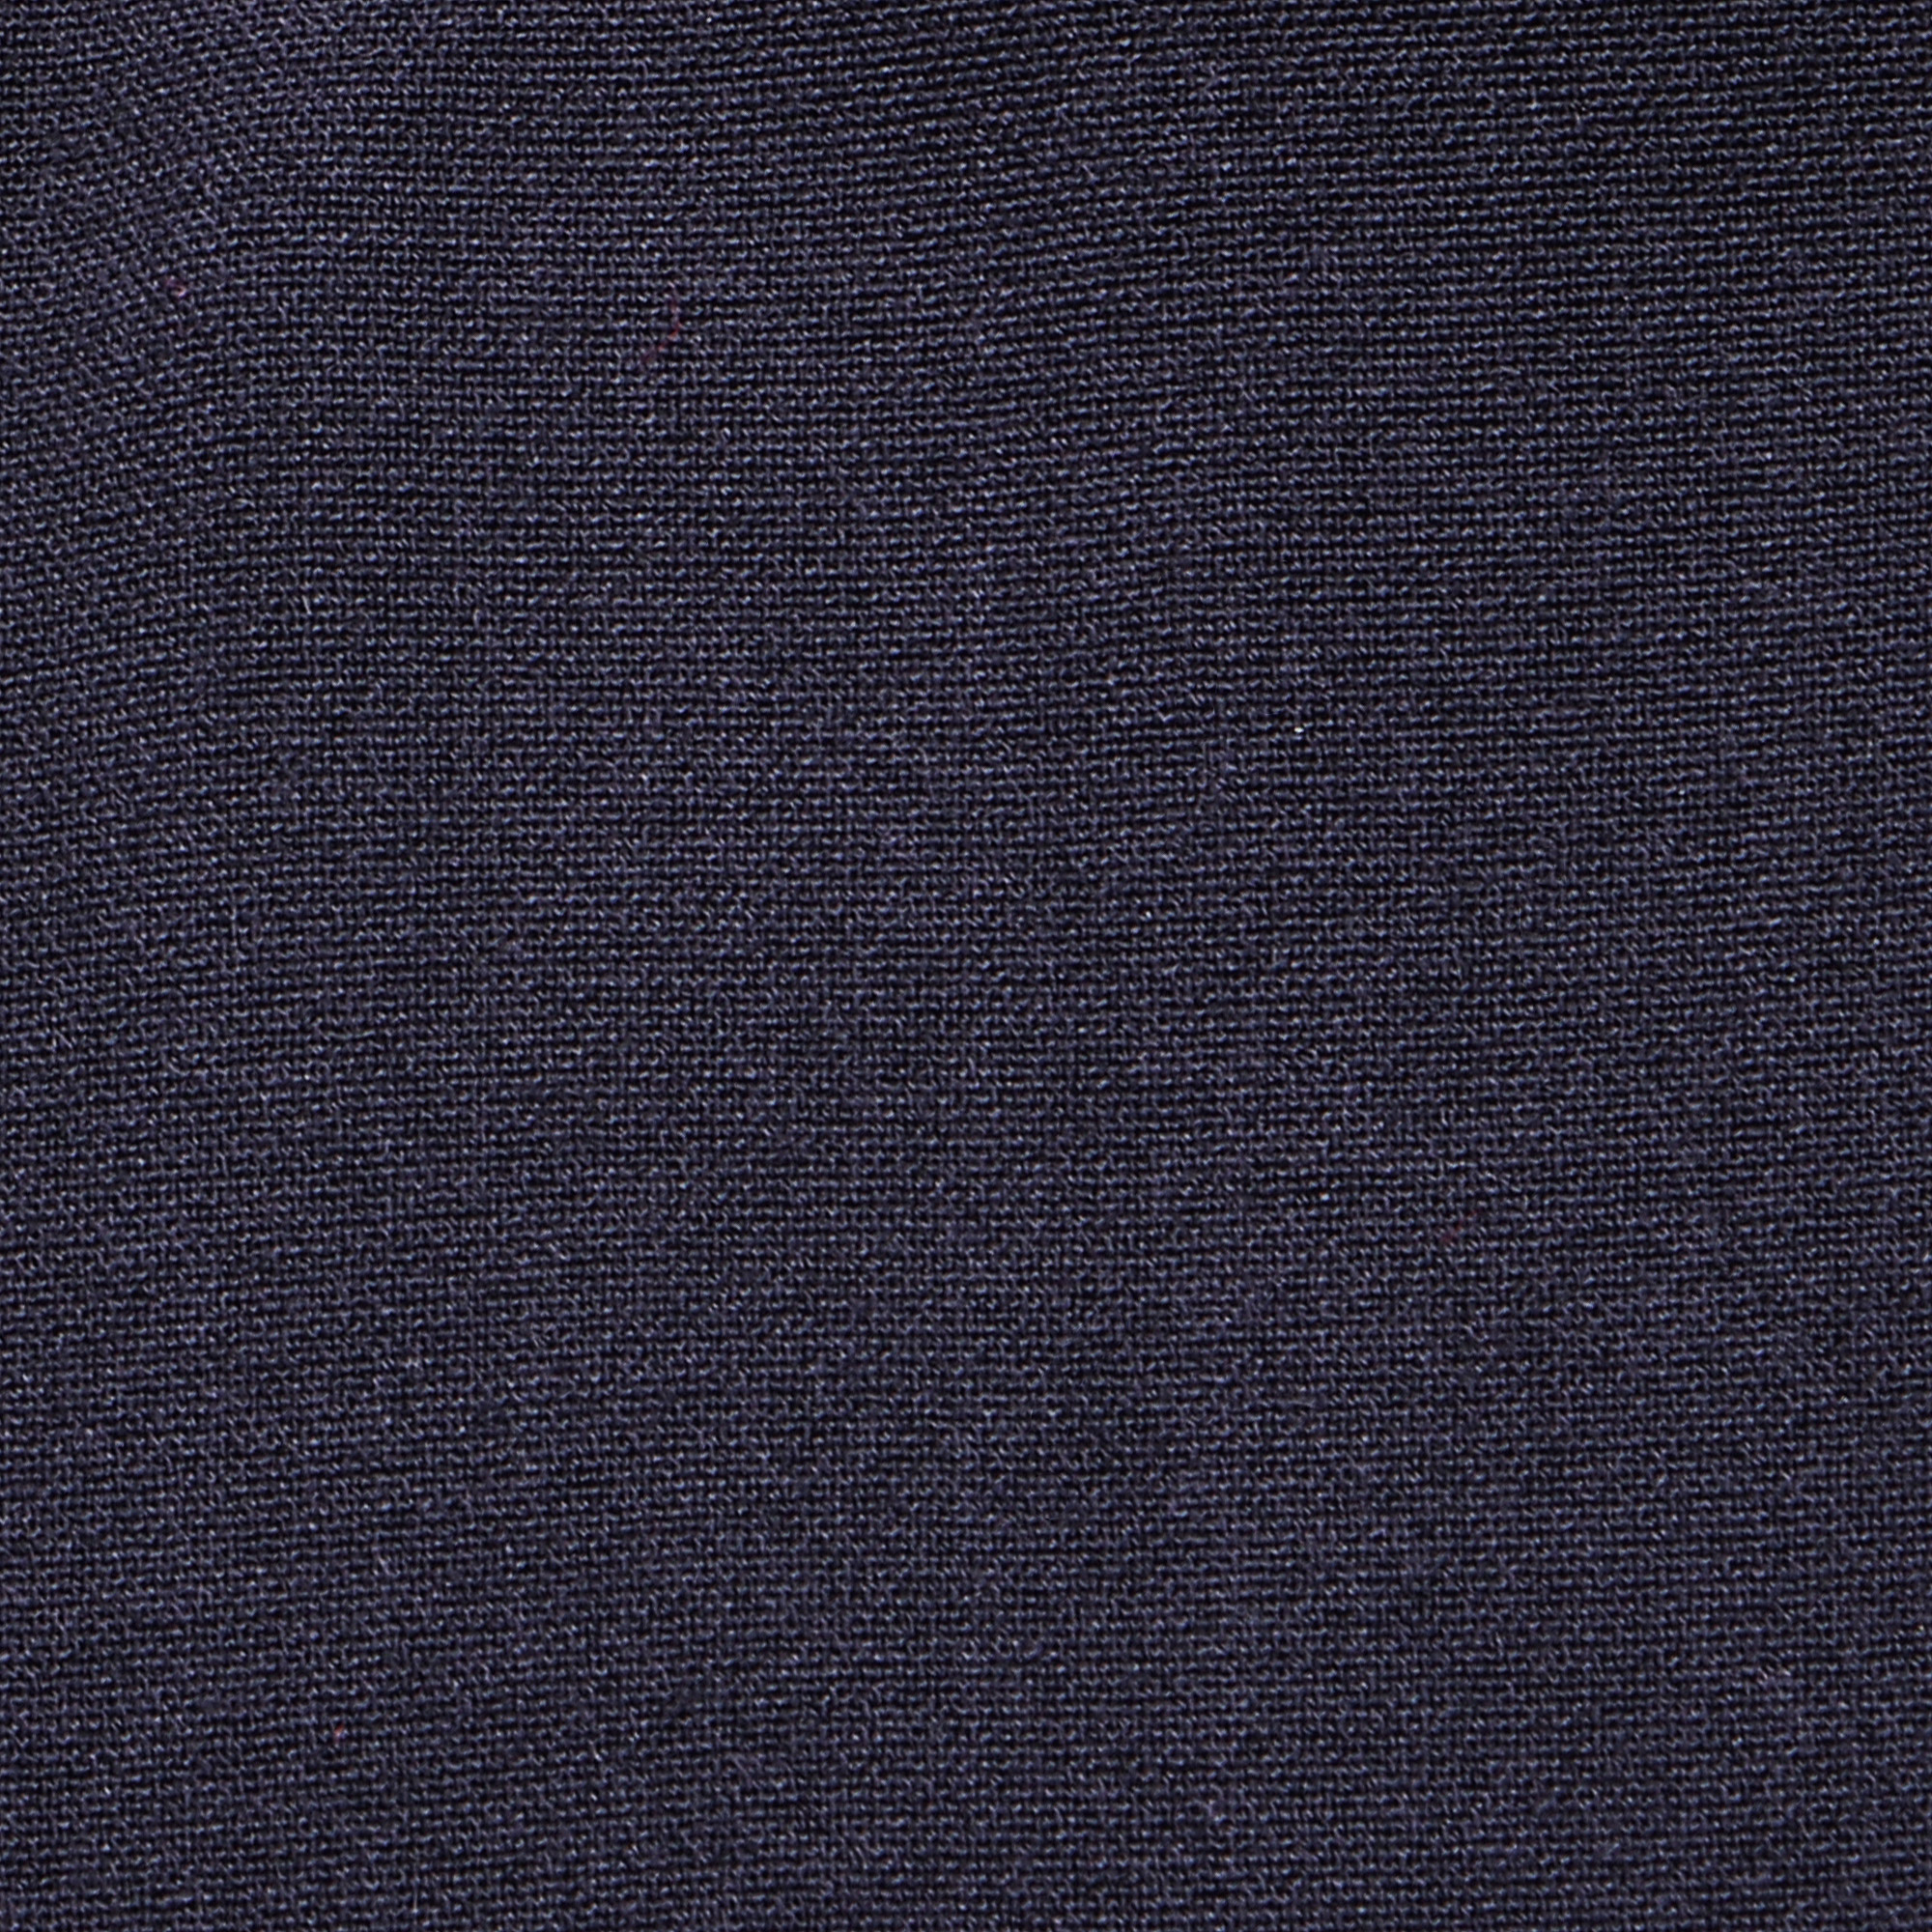 Юбка школьная КАРАМЕЛЛИ О74708 синяя 134, цвет синий, размер 134 - фото 5